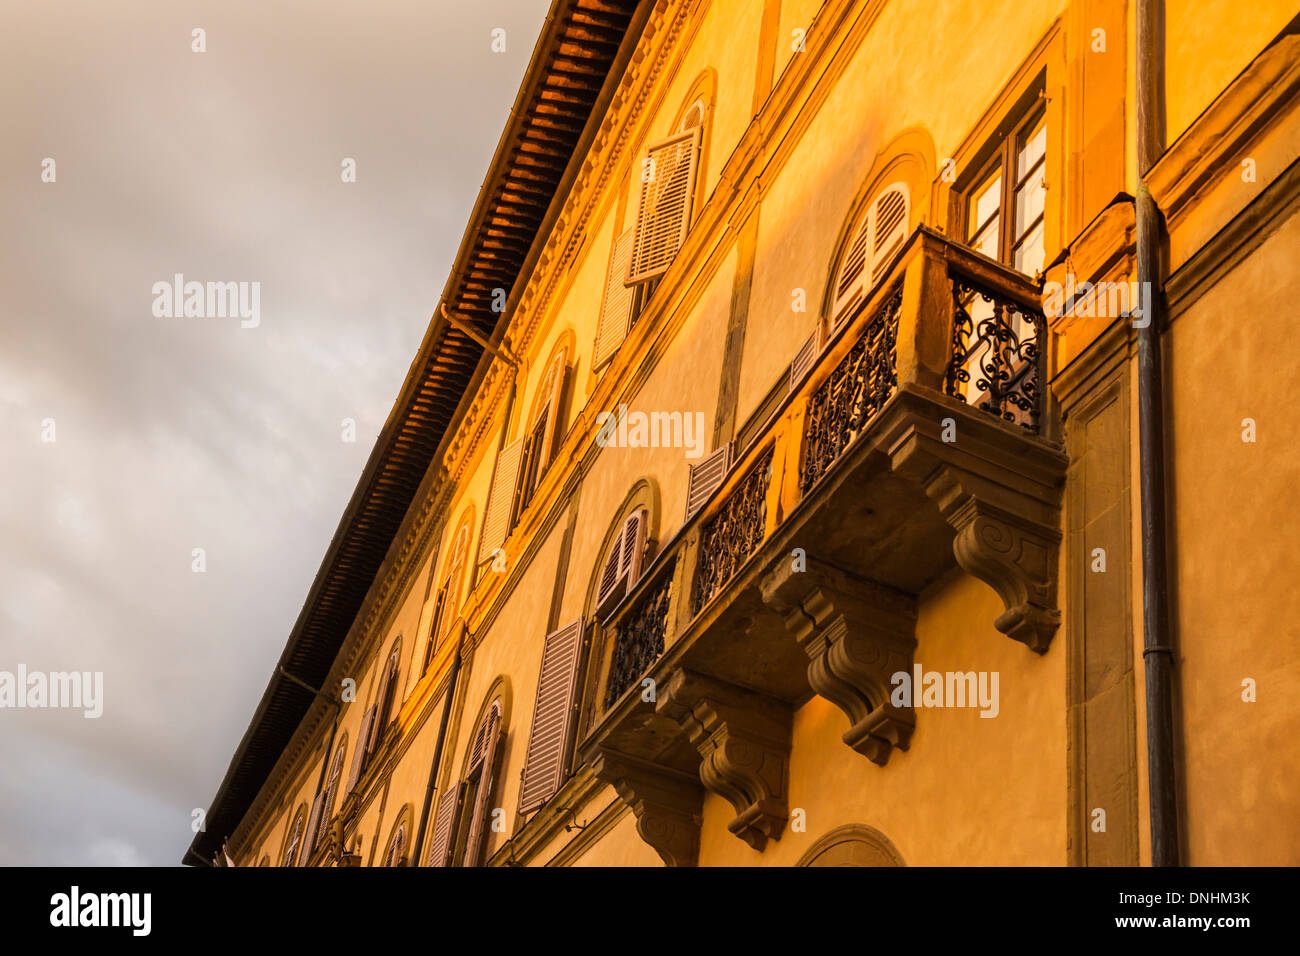 Basso angolo di visione di un edificio storico, Siena, in provincia di Siena, Toscana, Italia Foto Stock